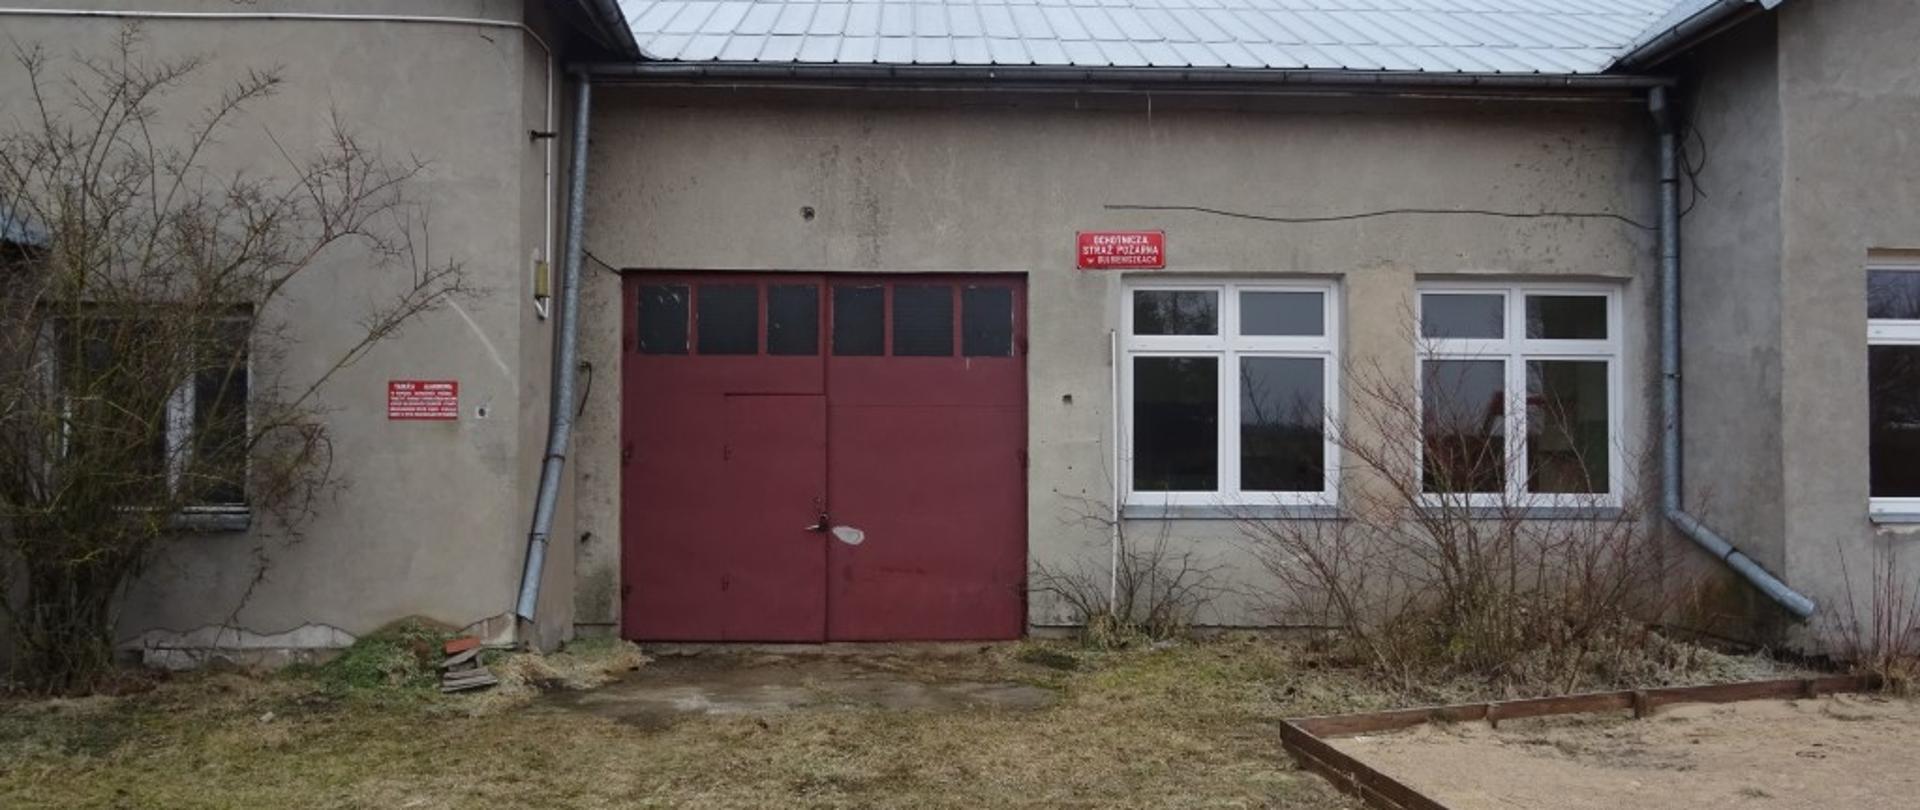 Budynek murowany koloru szarego kryty blachą. Brama garażowa koloru czerwonego. Podjazd utwardzony z ziemi. 